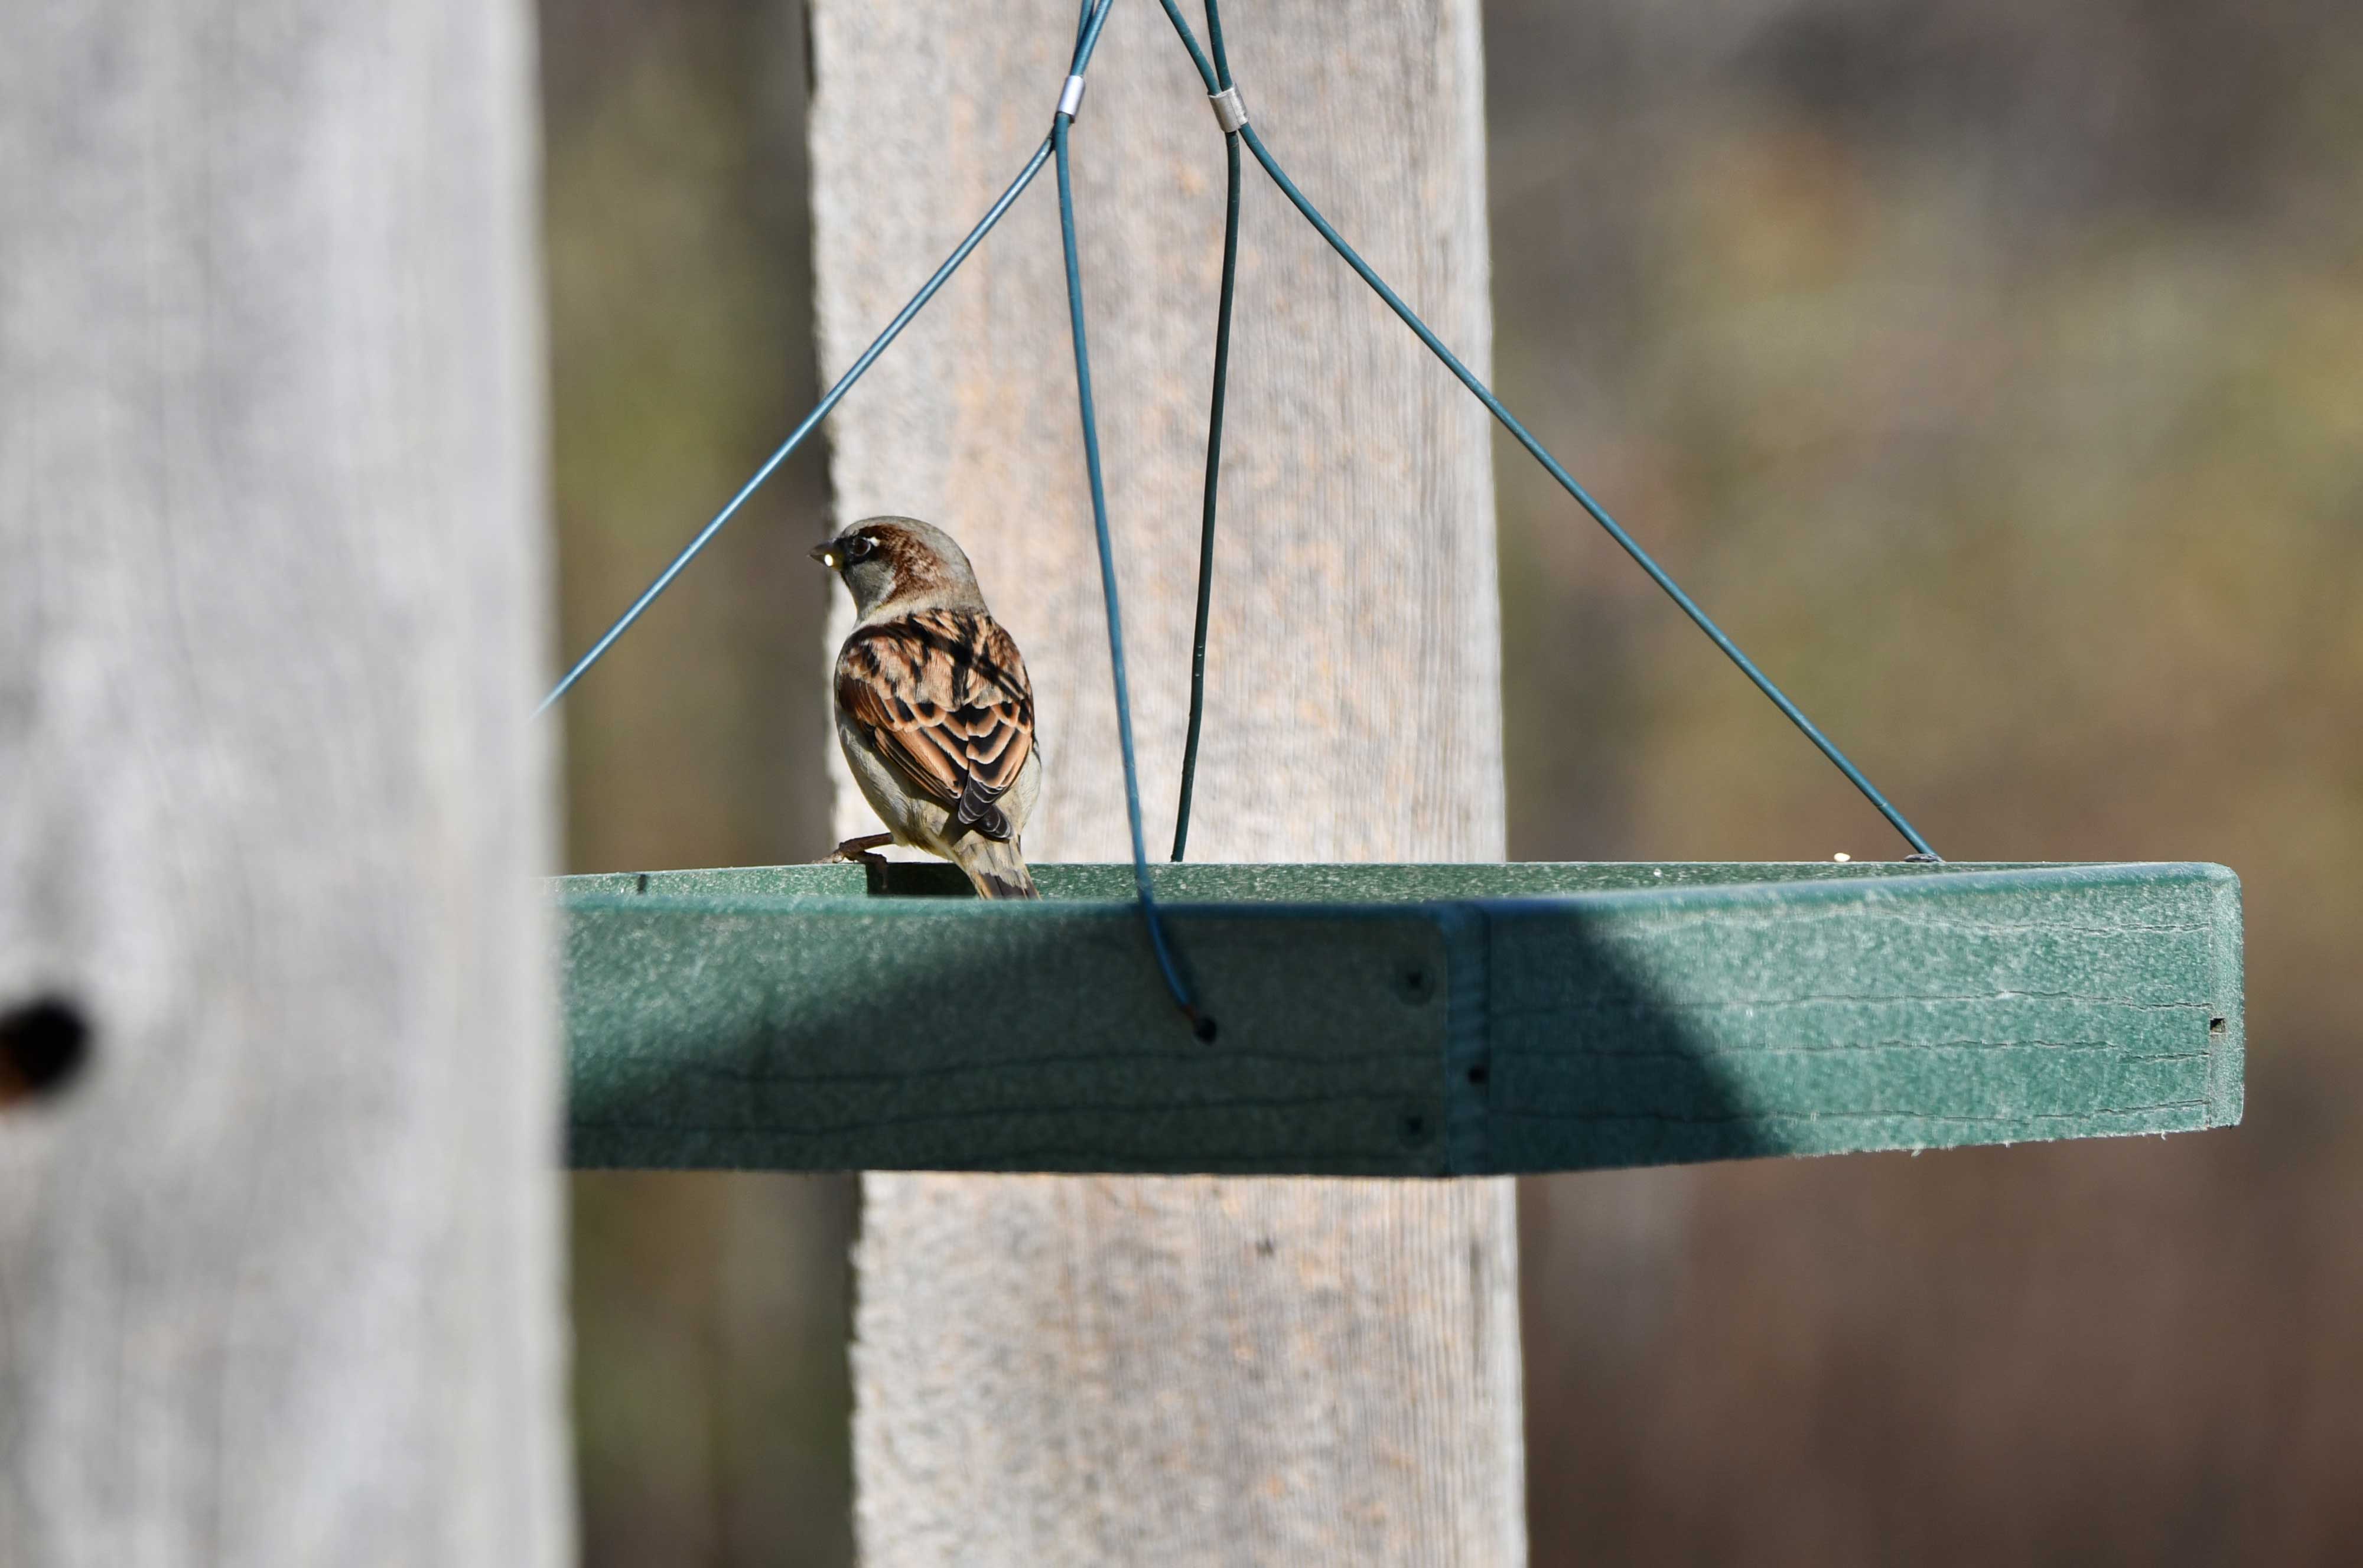 A house sparrow at a feeder.